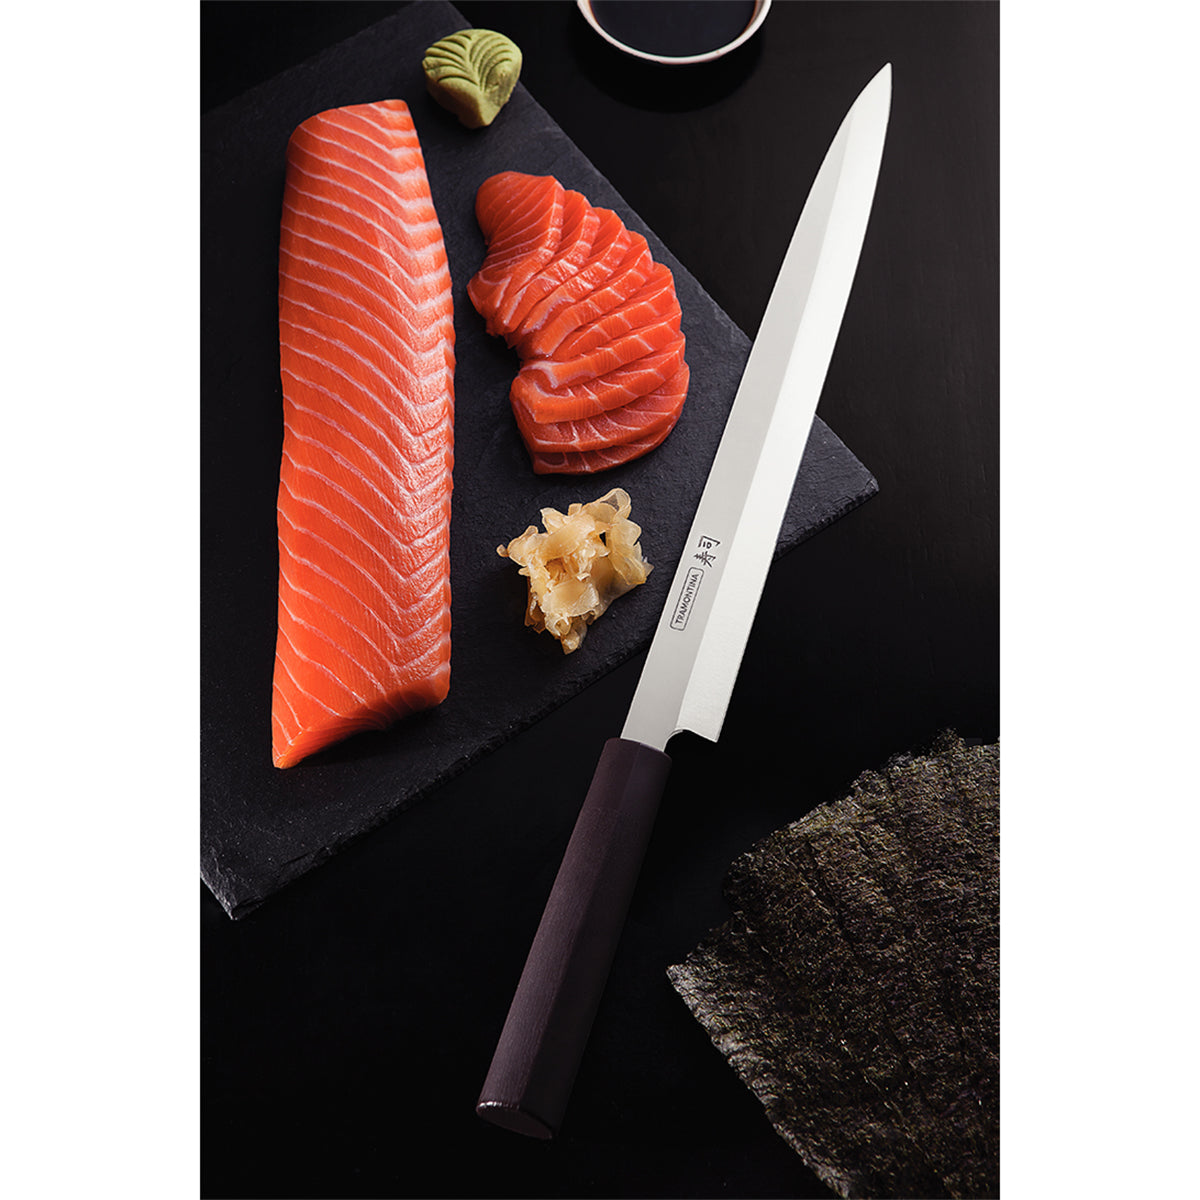 Cuchillo Yanagiba de 13 Pulgadas Silver Sushi